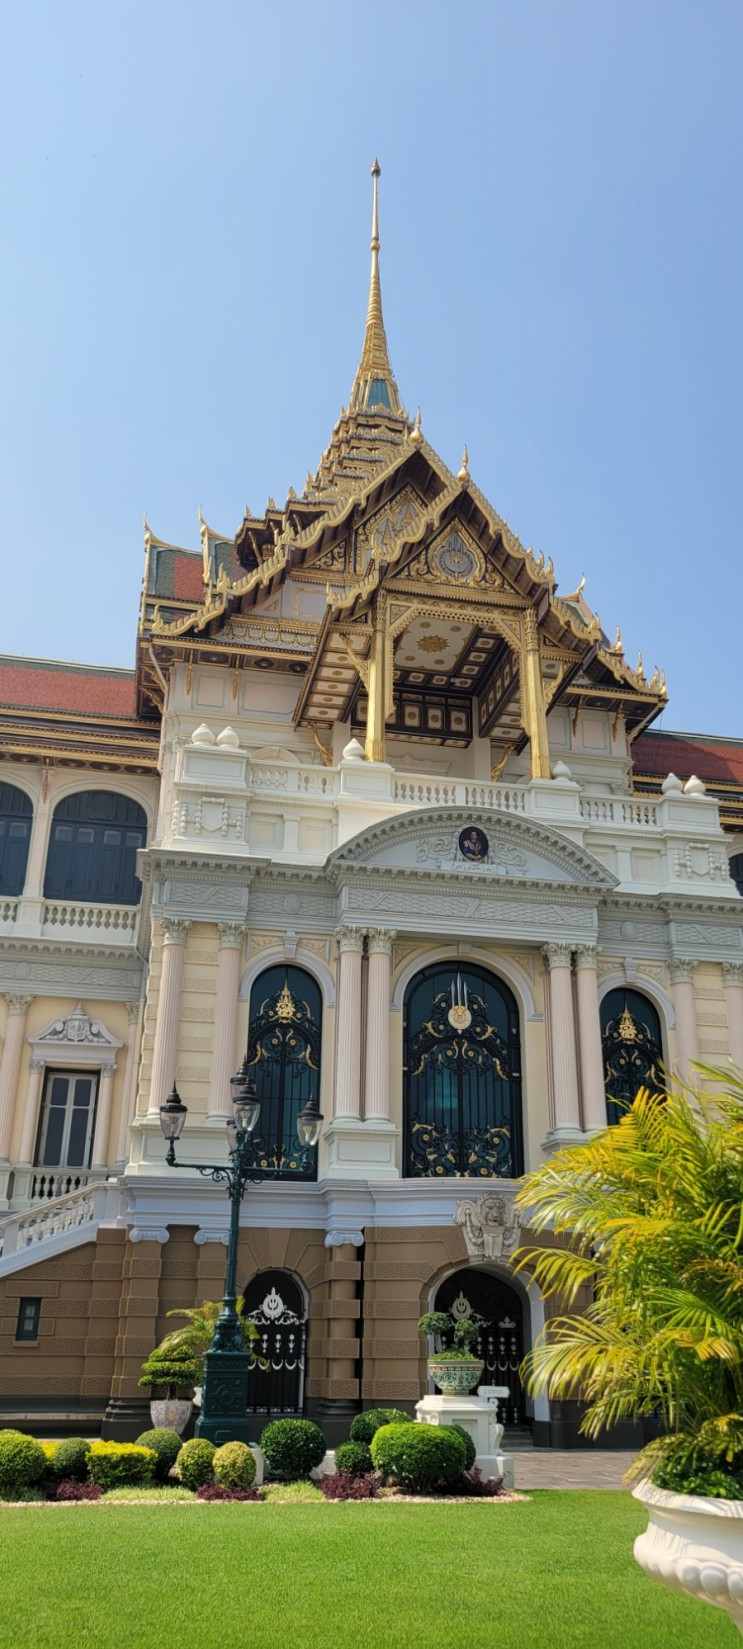 [태국 방콕여행] 꼭 가야하는 왕궁 / 왓포 / 왓아룬(새벽사원) 관광 일정 순서